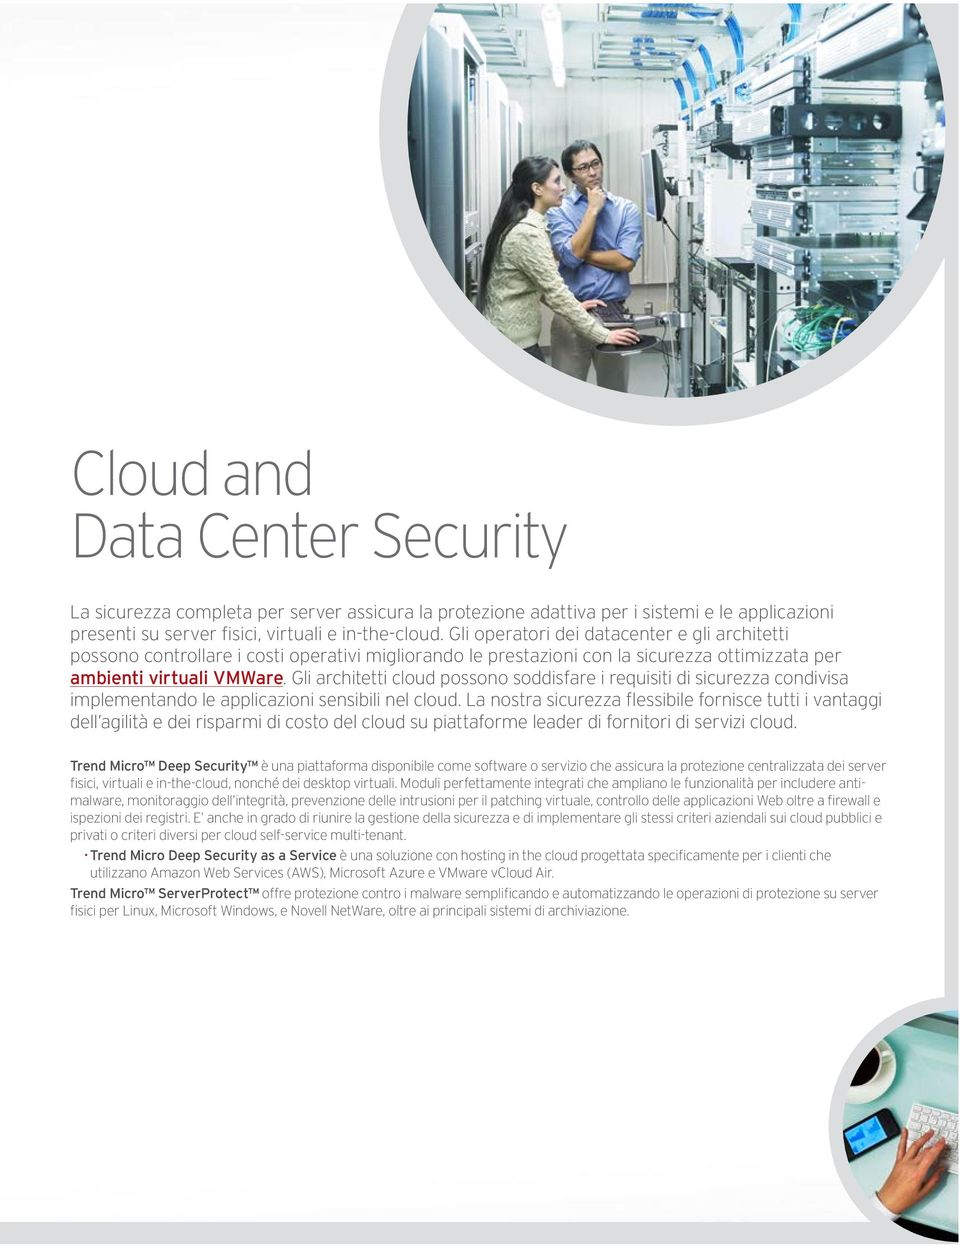 Gli architetti cloud possono soddisfare i requisiti di sicurezza condivisa implementando le applicazioni sensibili nel cloud.